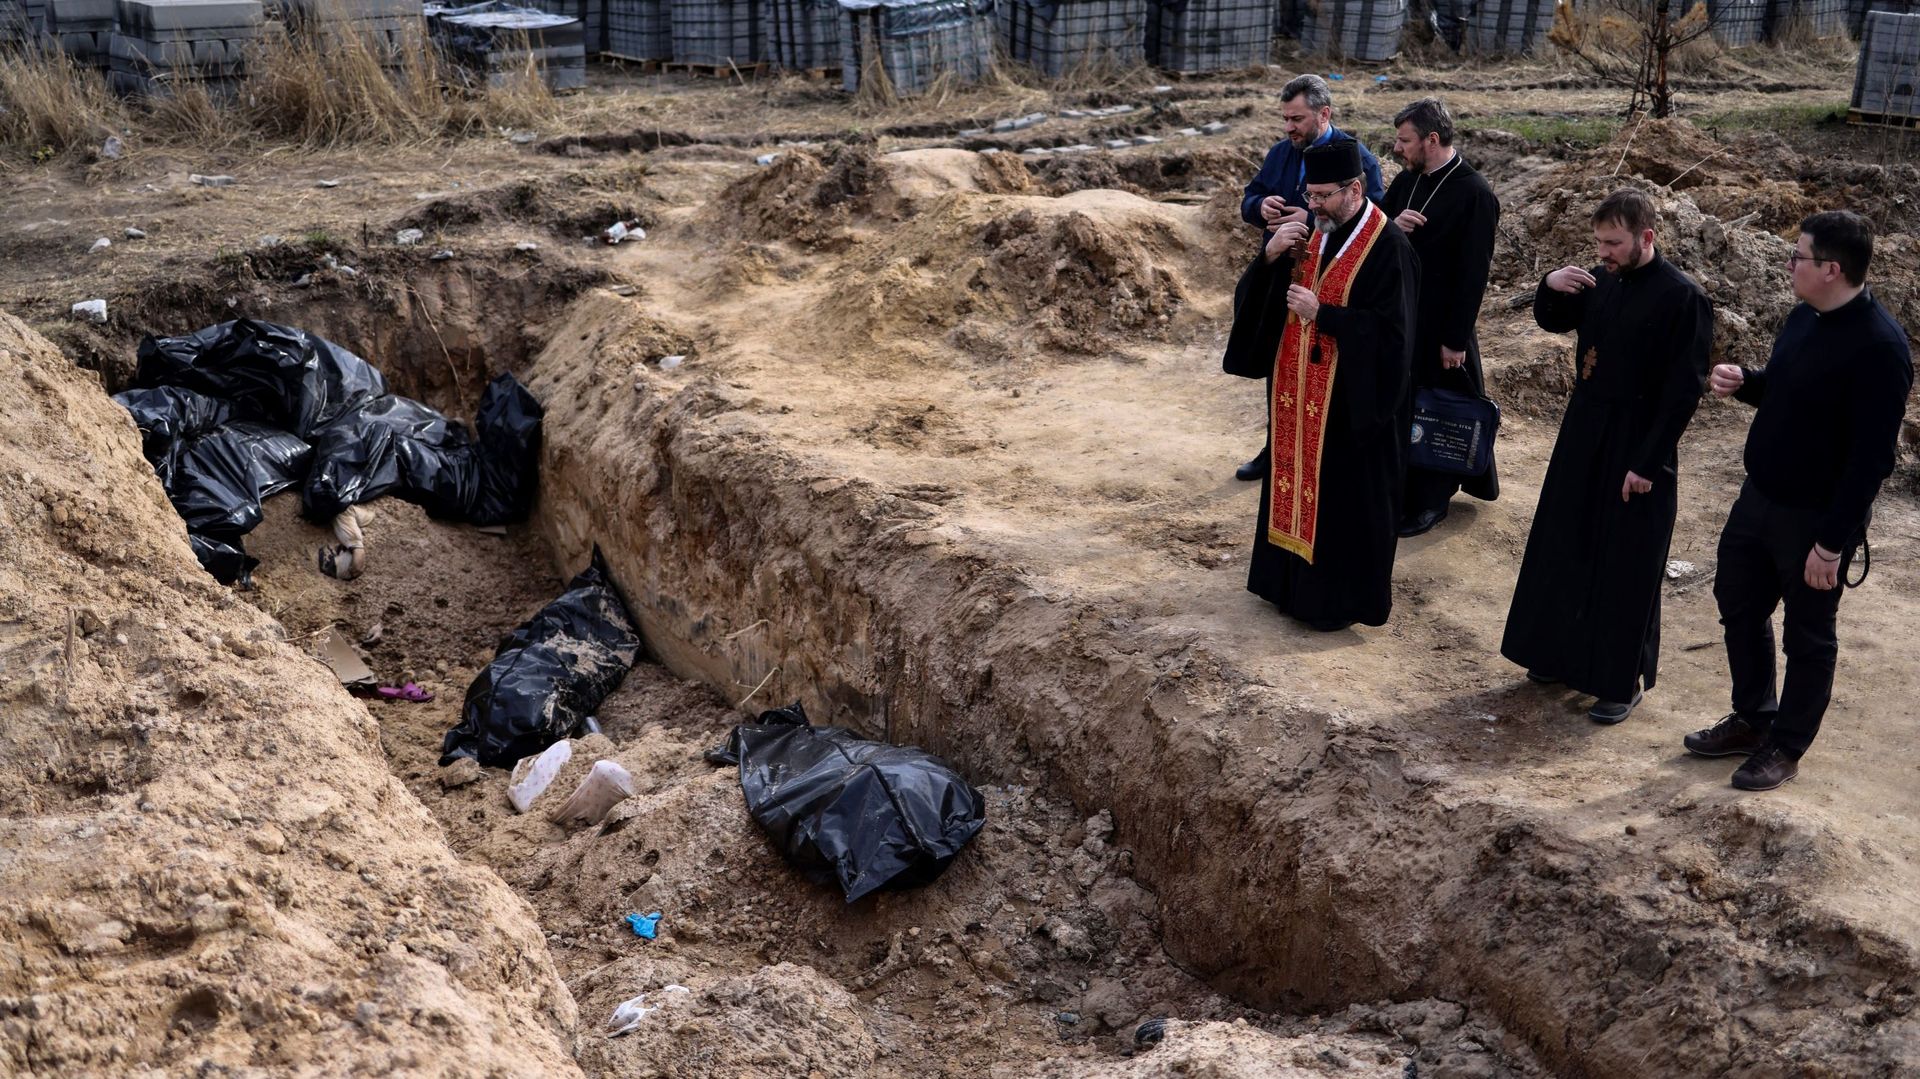 Des prêtres prient devant des sacs mortuaires dans une fosse commune située sur le terrain entourant l’église Saint-André à Boutcha, le 7 avril 2022, dans le cadre de l’invasion militaire lancée par la Russie en Ukraine.